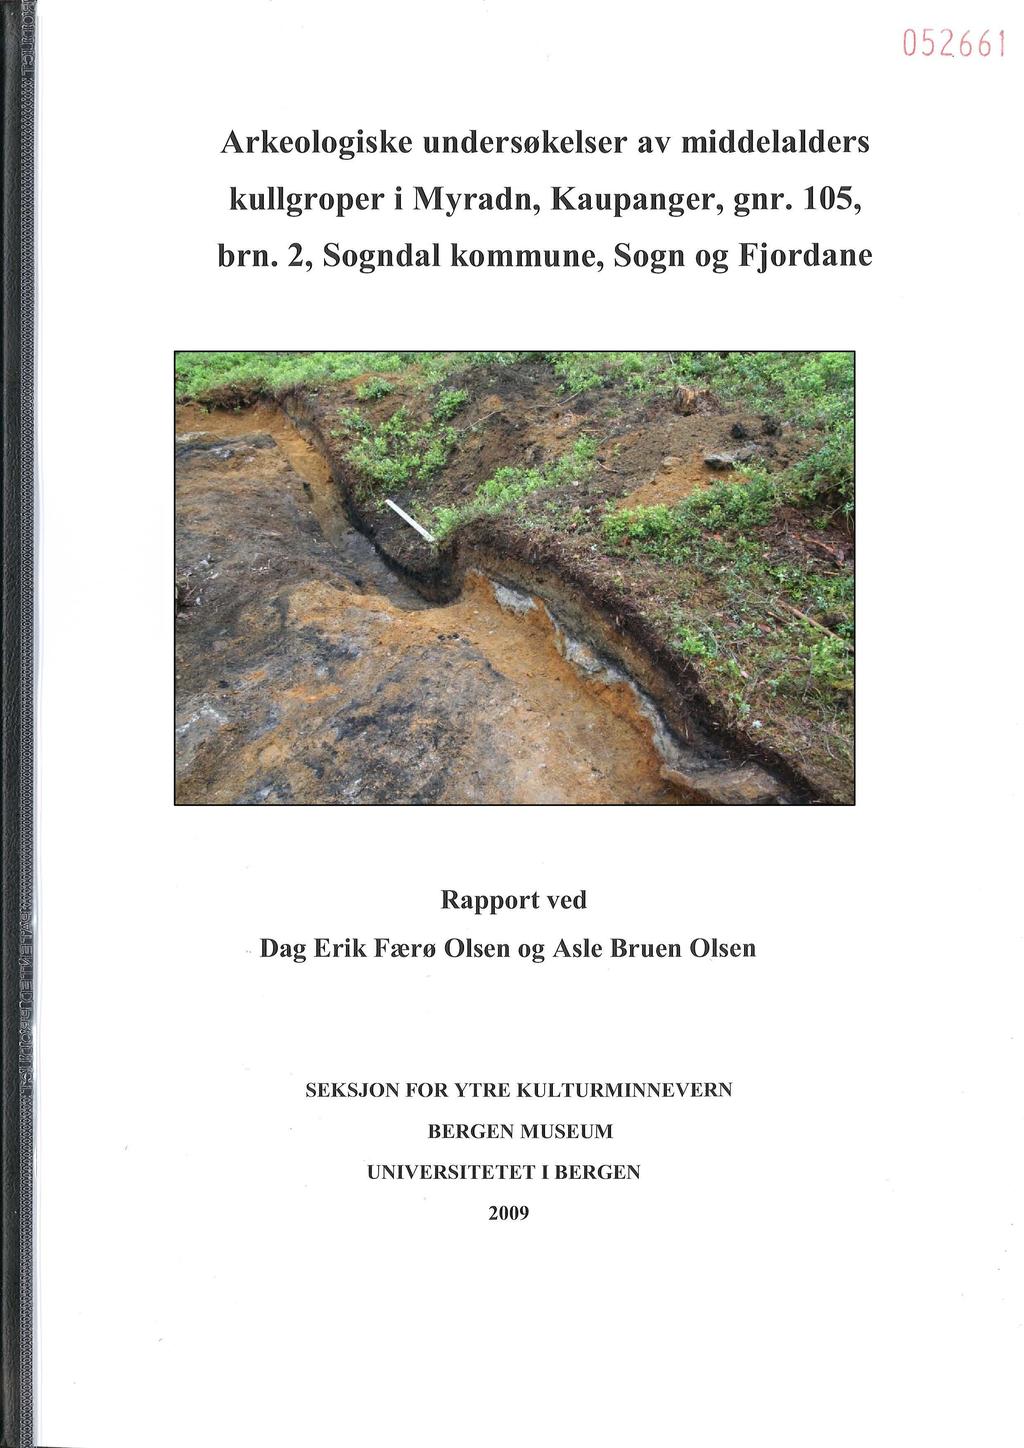 052661 Arkeologiske undersøkelser av middelalders kullgroper i Myradn, Kaupanger, gnr. 105, brn.